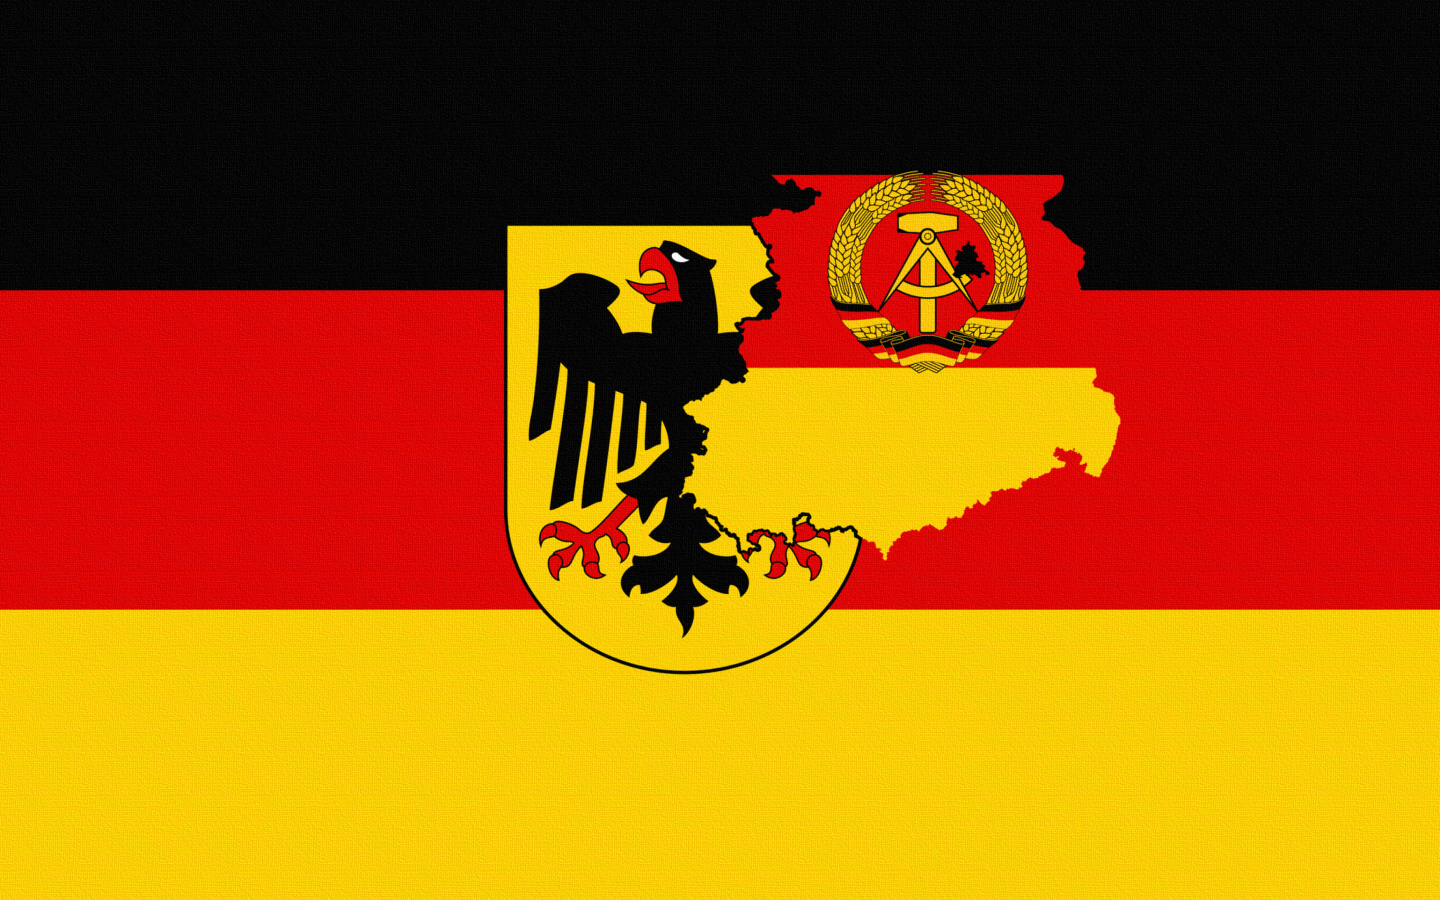 Sfondi German Flag With Eagle Emblem 1440x900